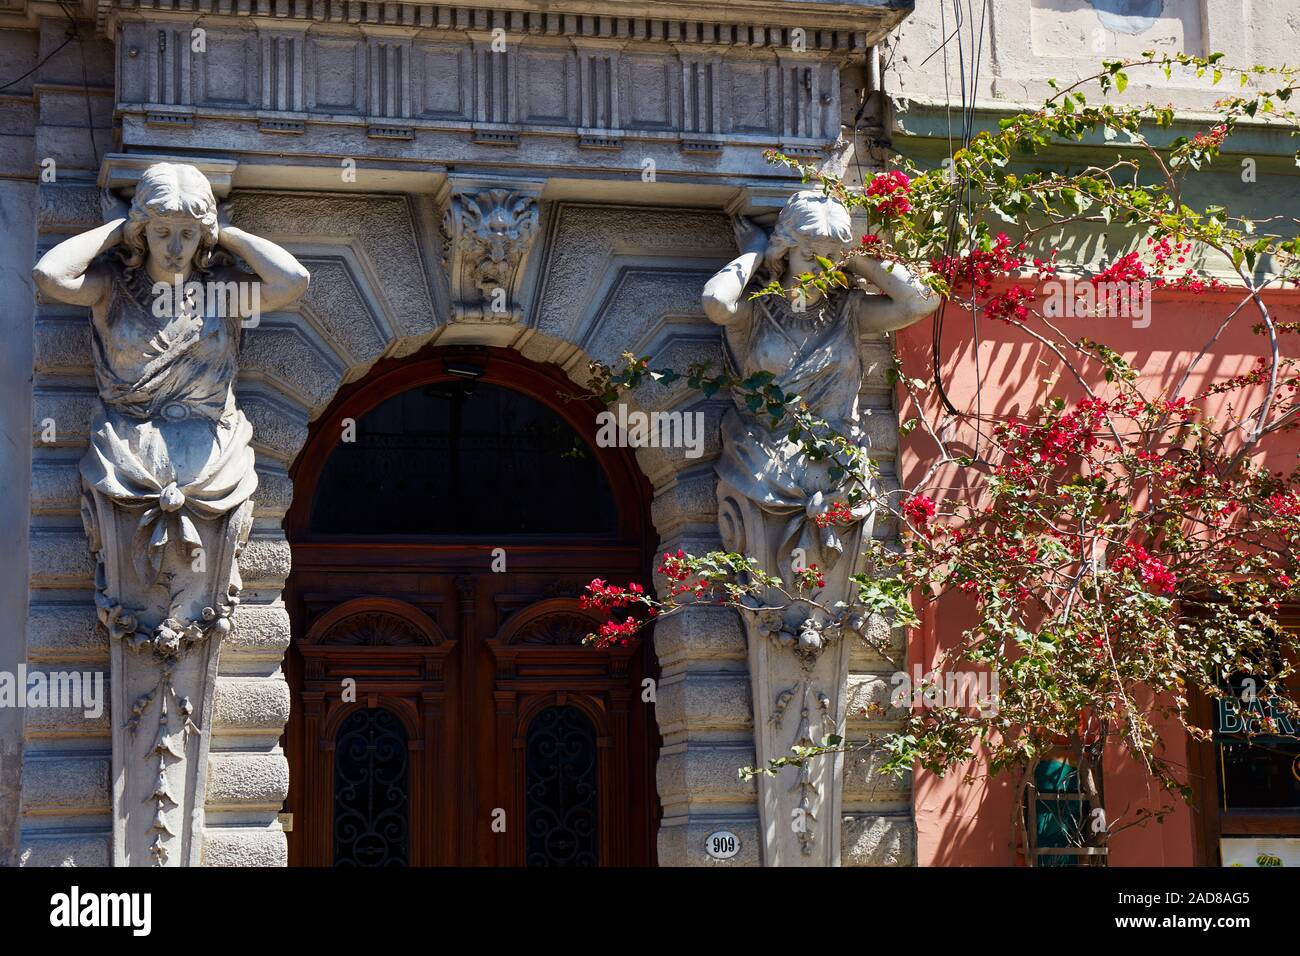 Deux cariatides à l'entrée d'un bâtiment colonial dans le quartier de San Telmo, Buenos Aires, Argentine. Banque D'Images